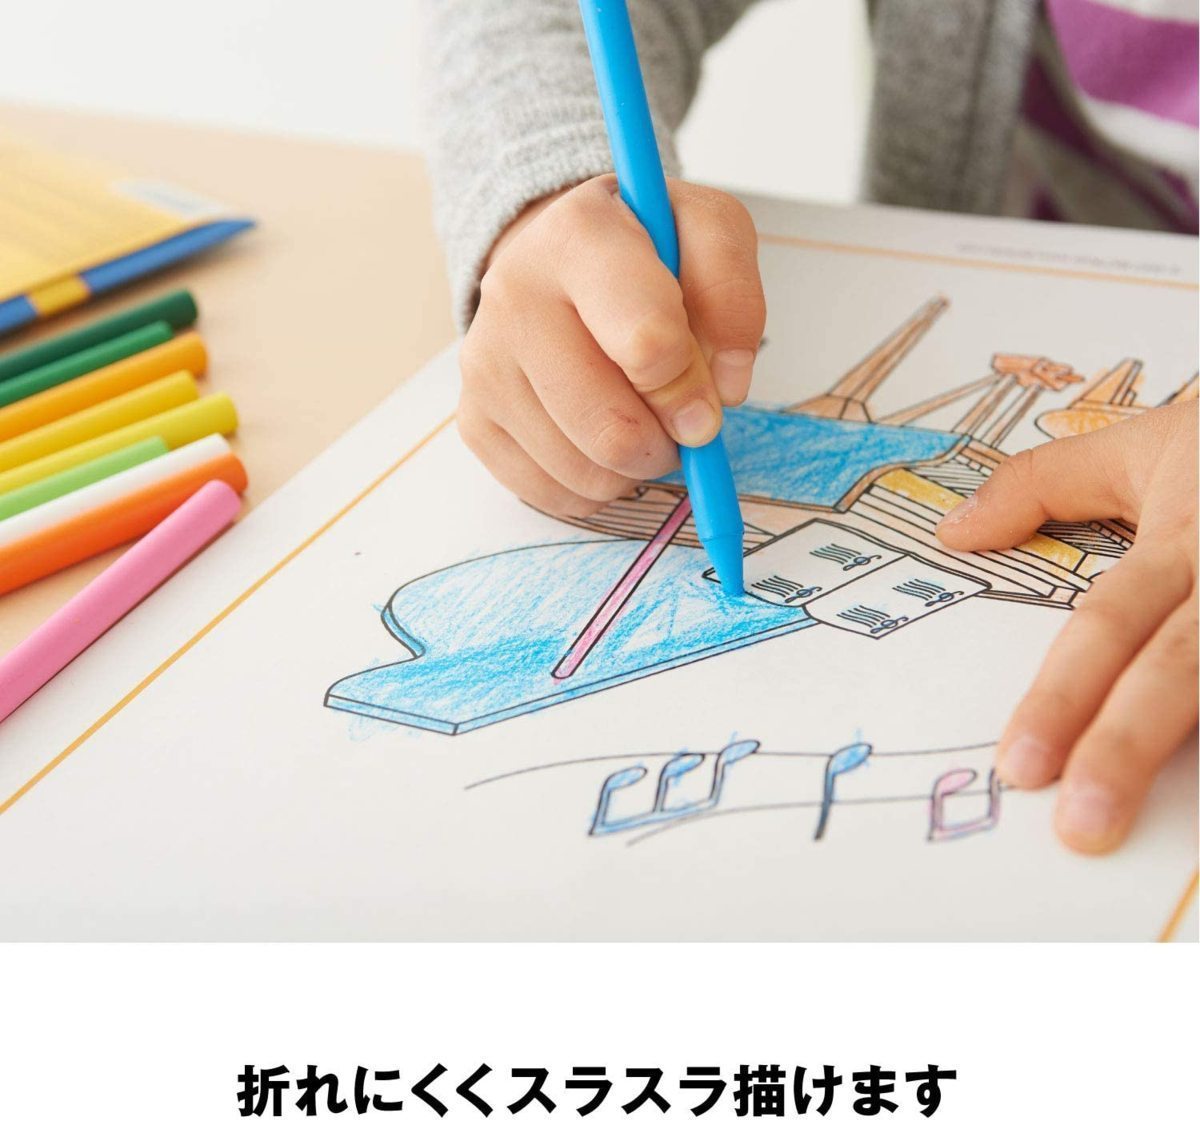  включение в покупку возможность авторучка порог двери мелки 24 цвет Bic Japan Kids BKCRY24E/0722x2 шт. комплект /.